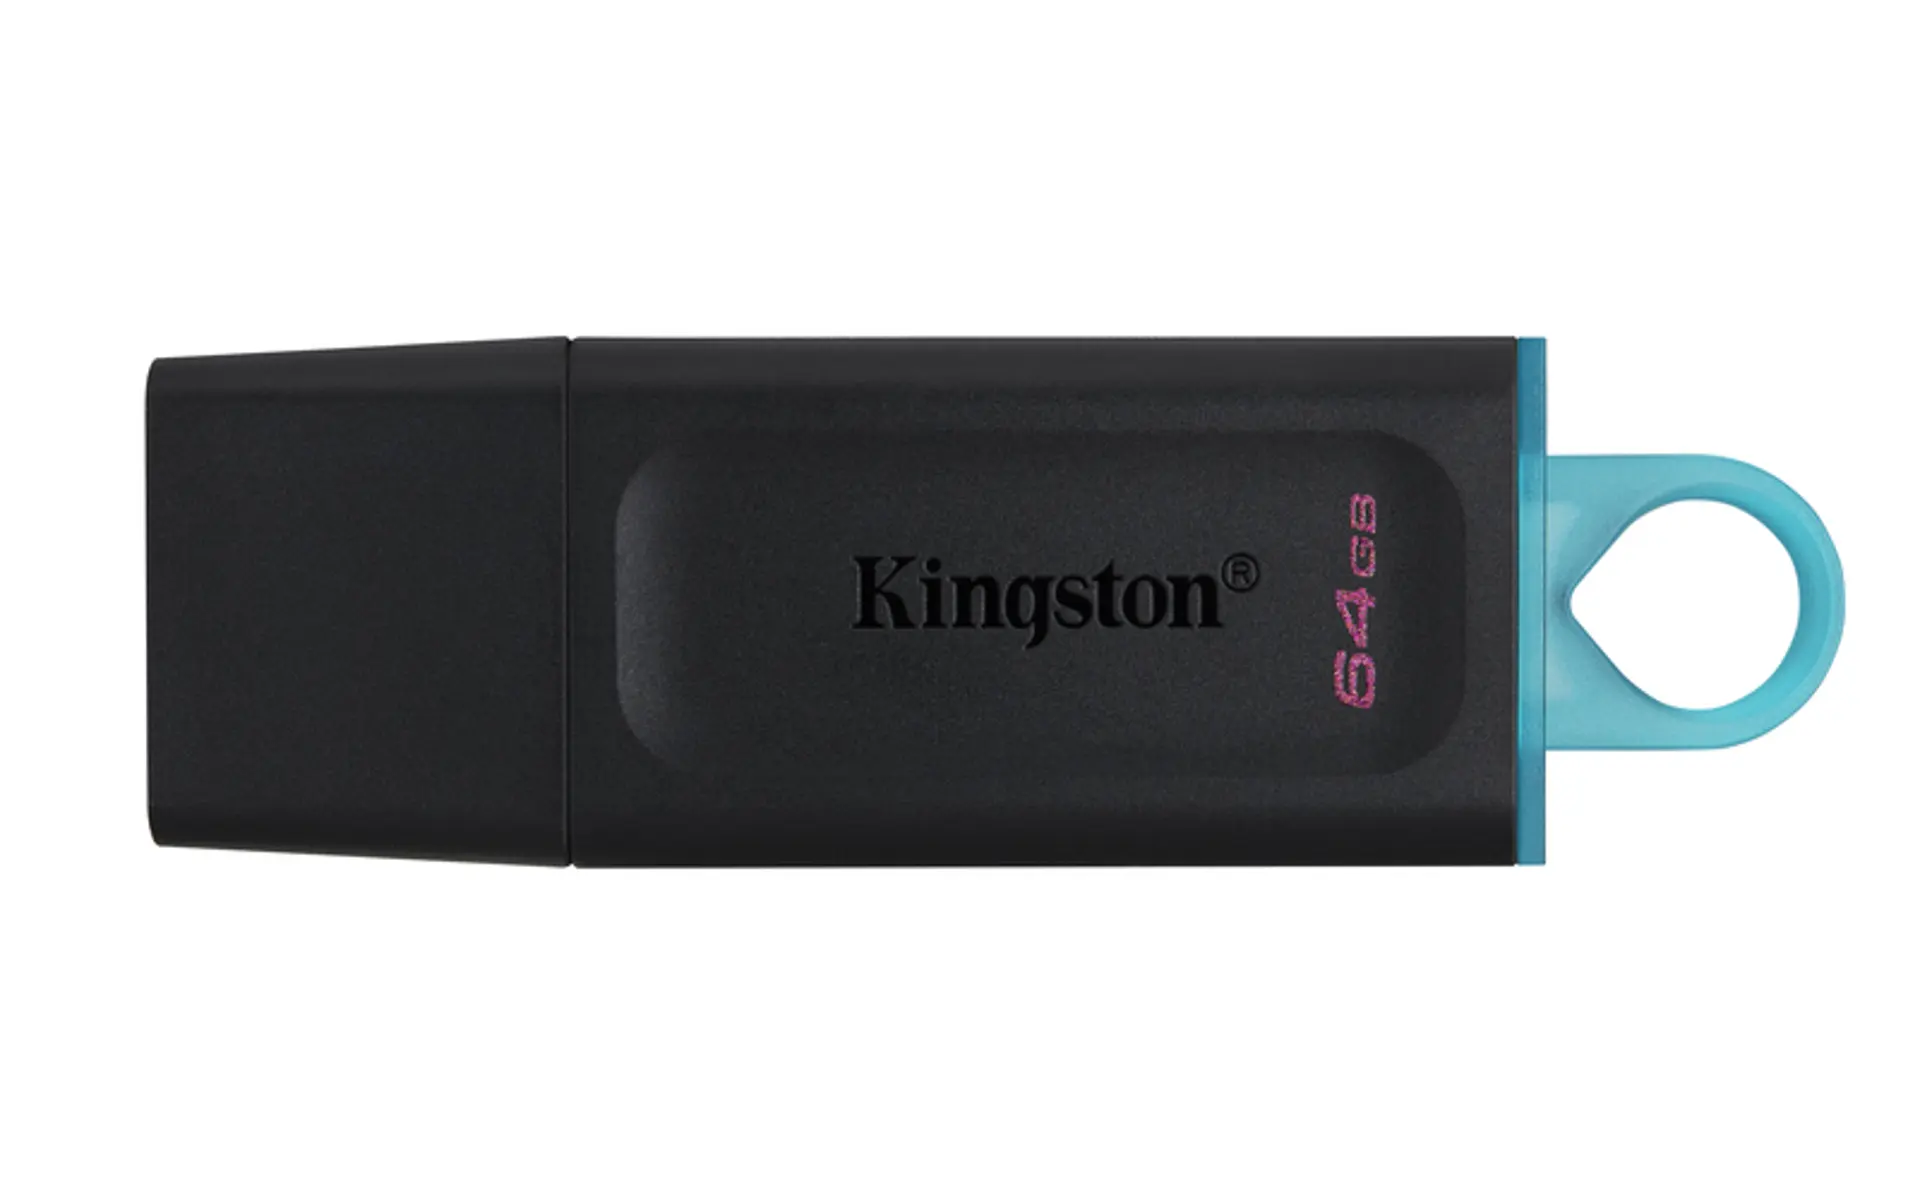 Kingston 32GB USB 3.1 G4 - DataTraveler